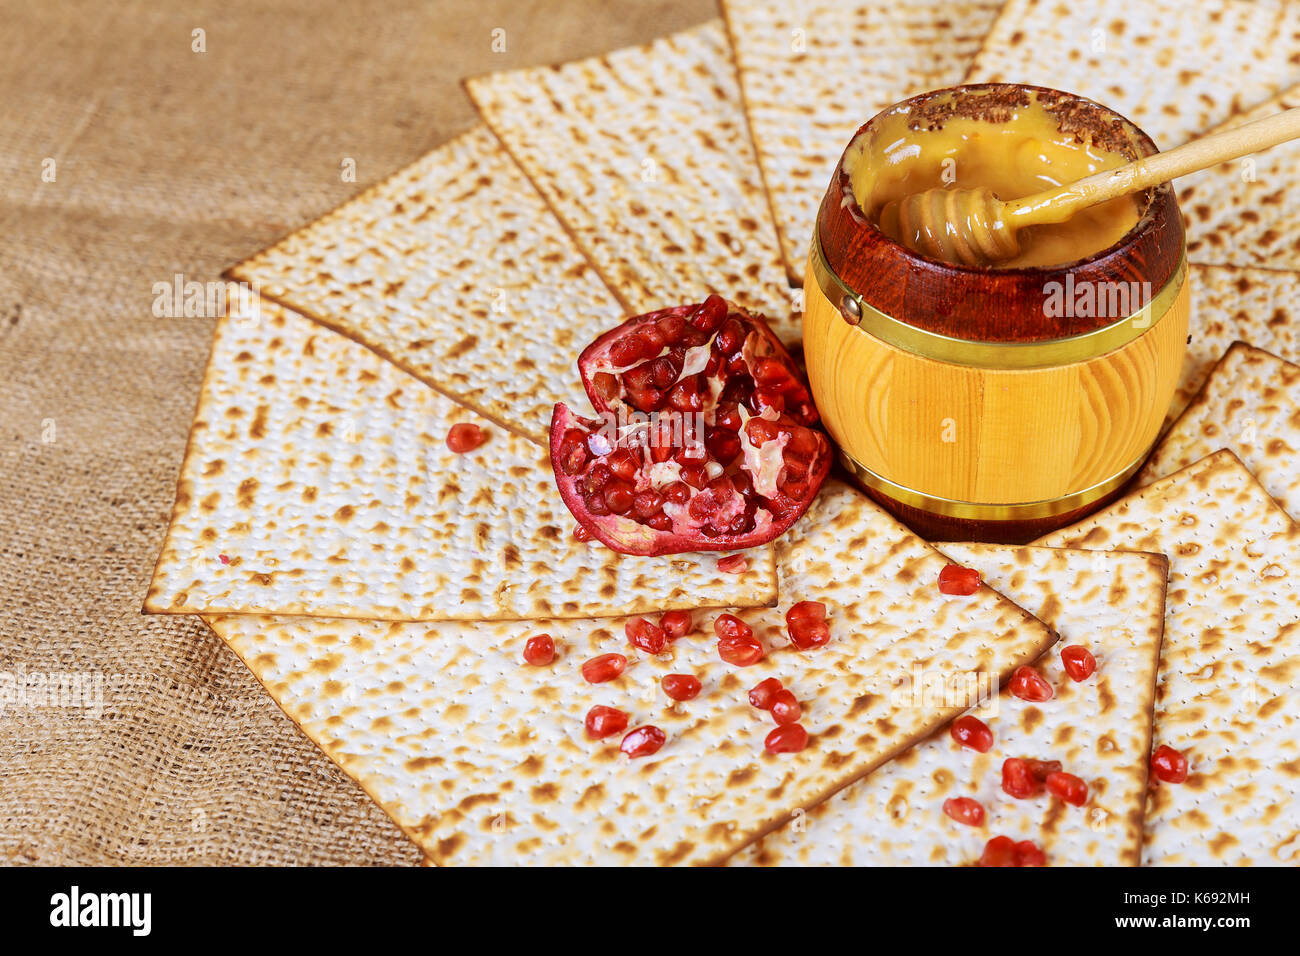 La miel de granada y los símbolos de vacaciones tradicionales Rosh Hashanah jewesh vacaciones en mesa de madera y fondo de madera Foto de stock